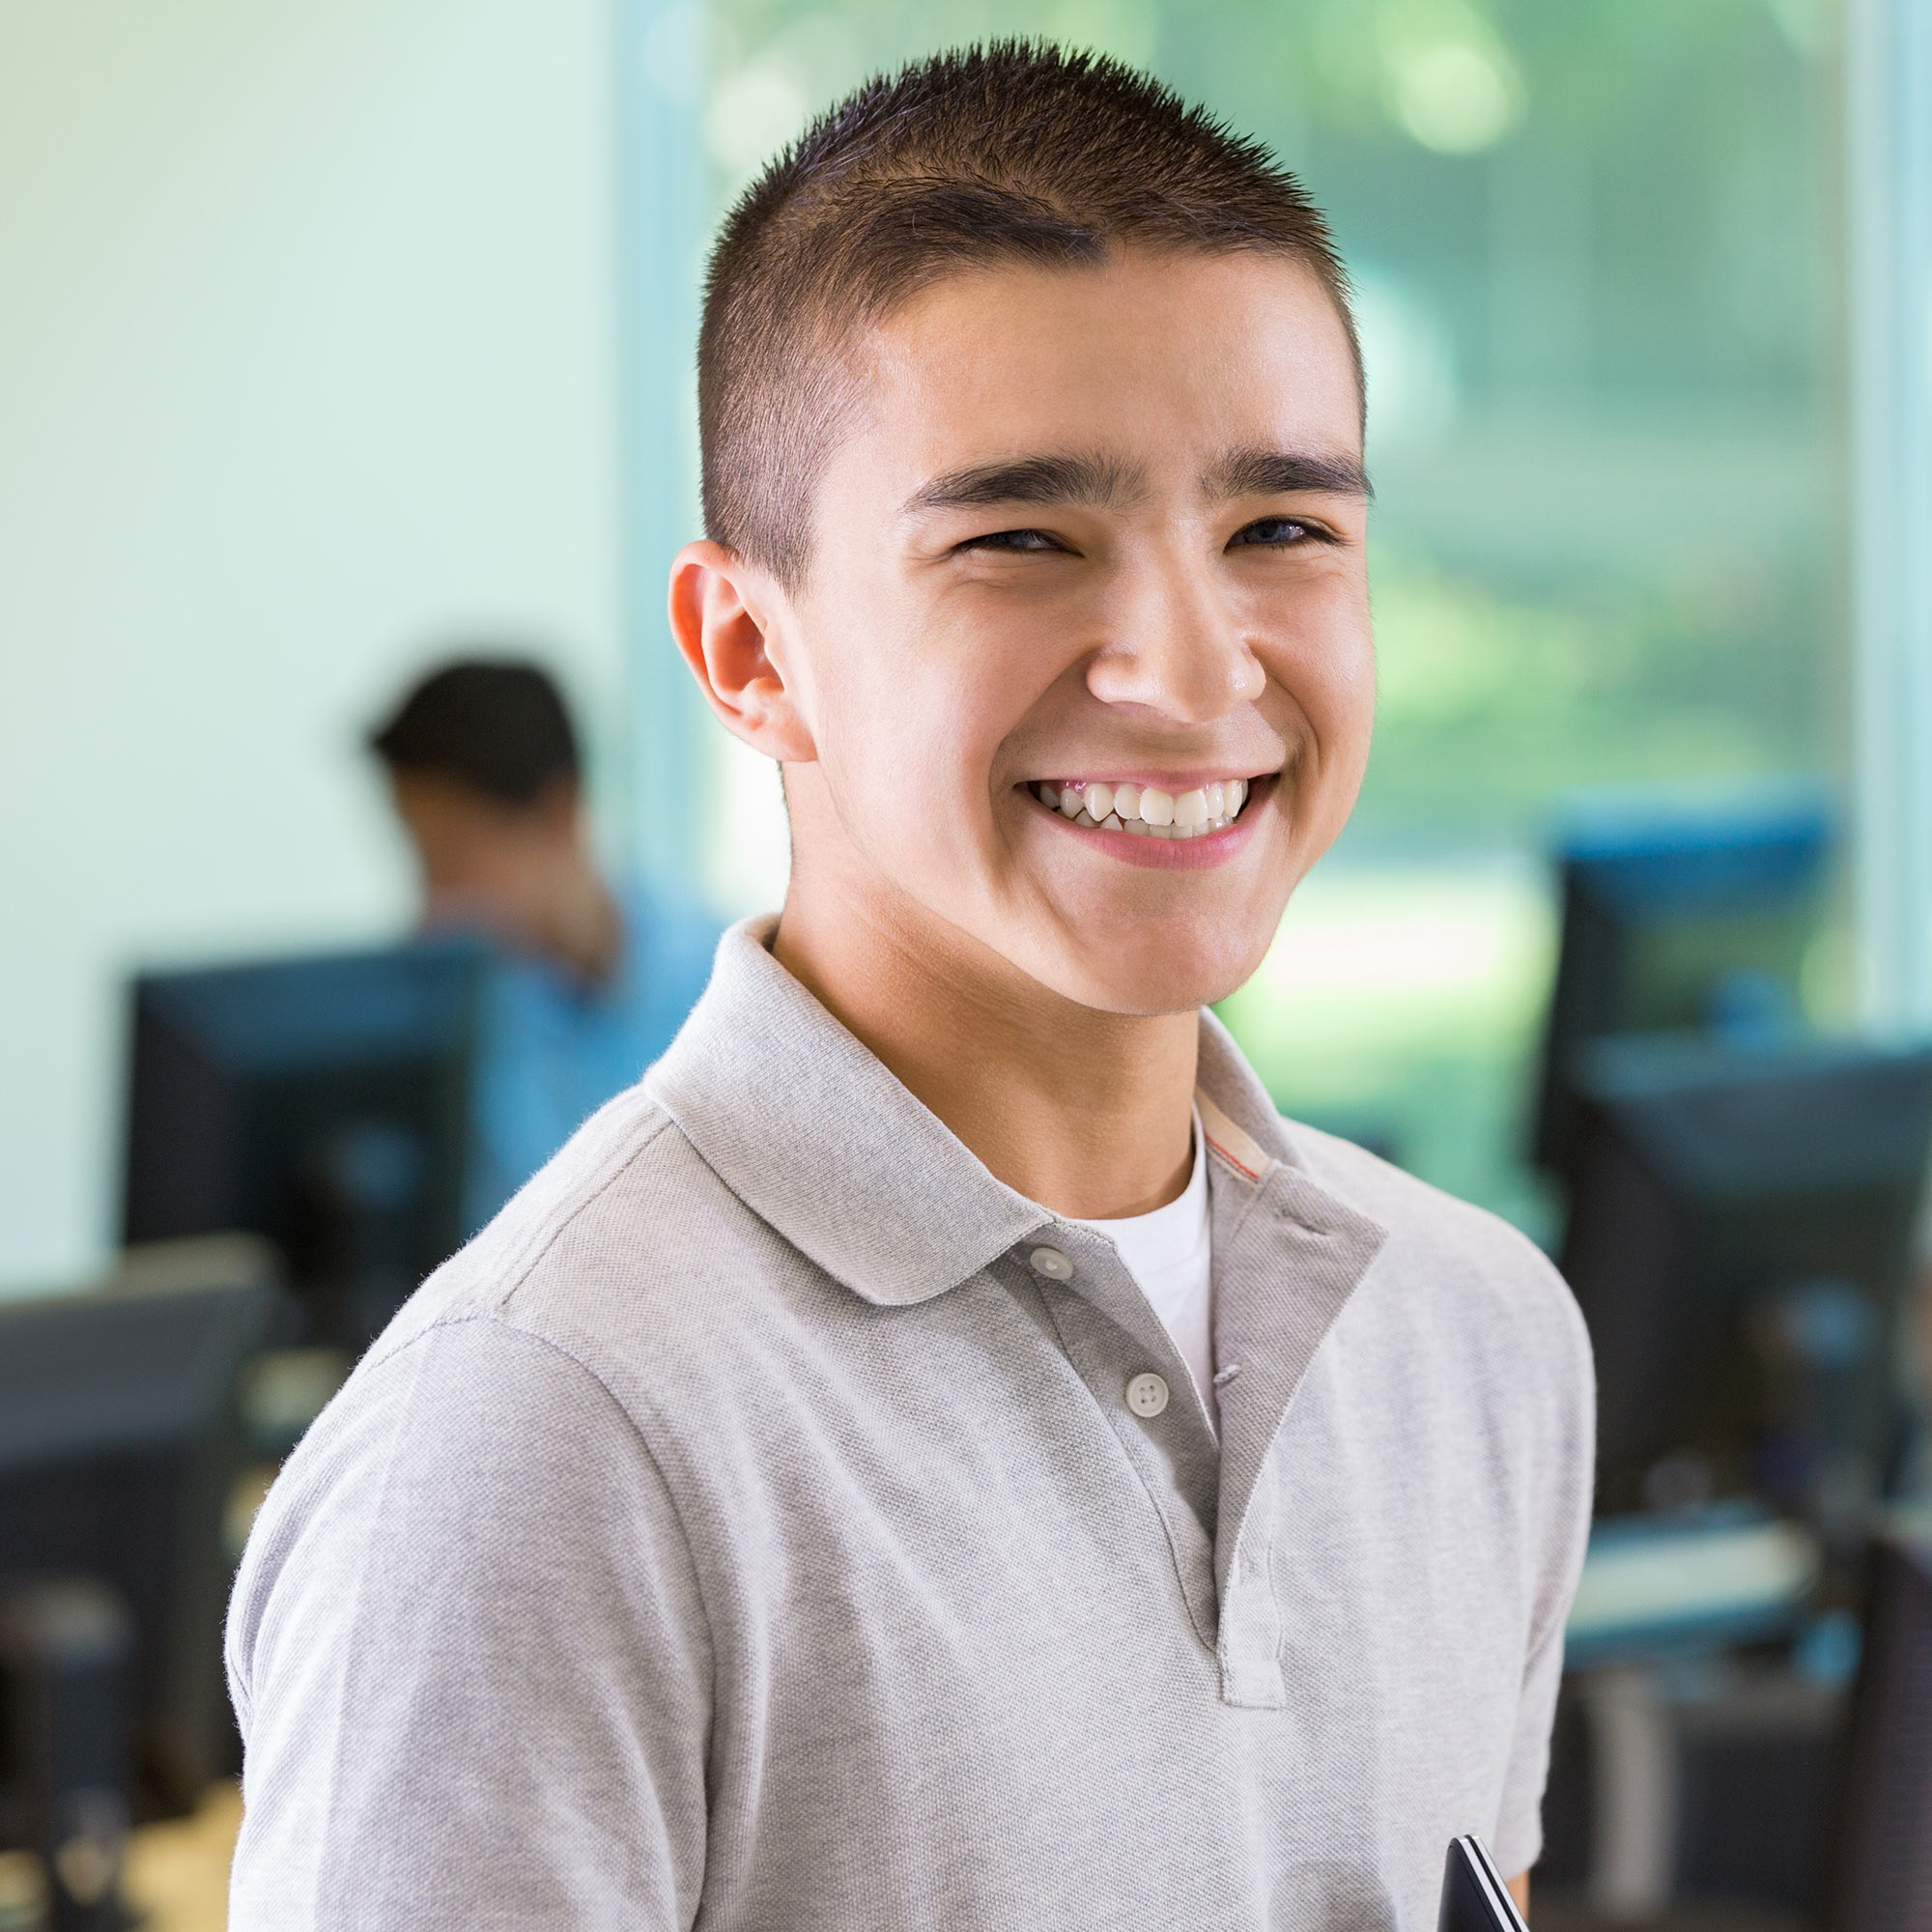 A teen boy in a gray polo shirt smiles confidently at the camera.